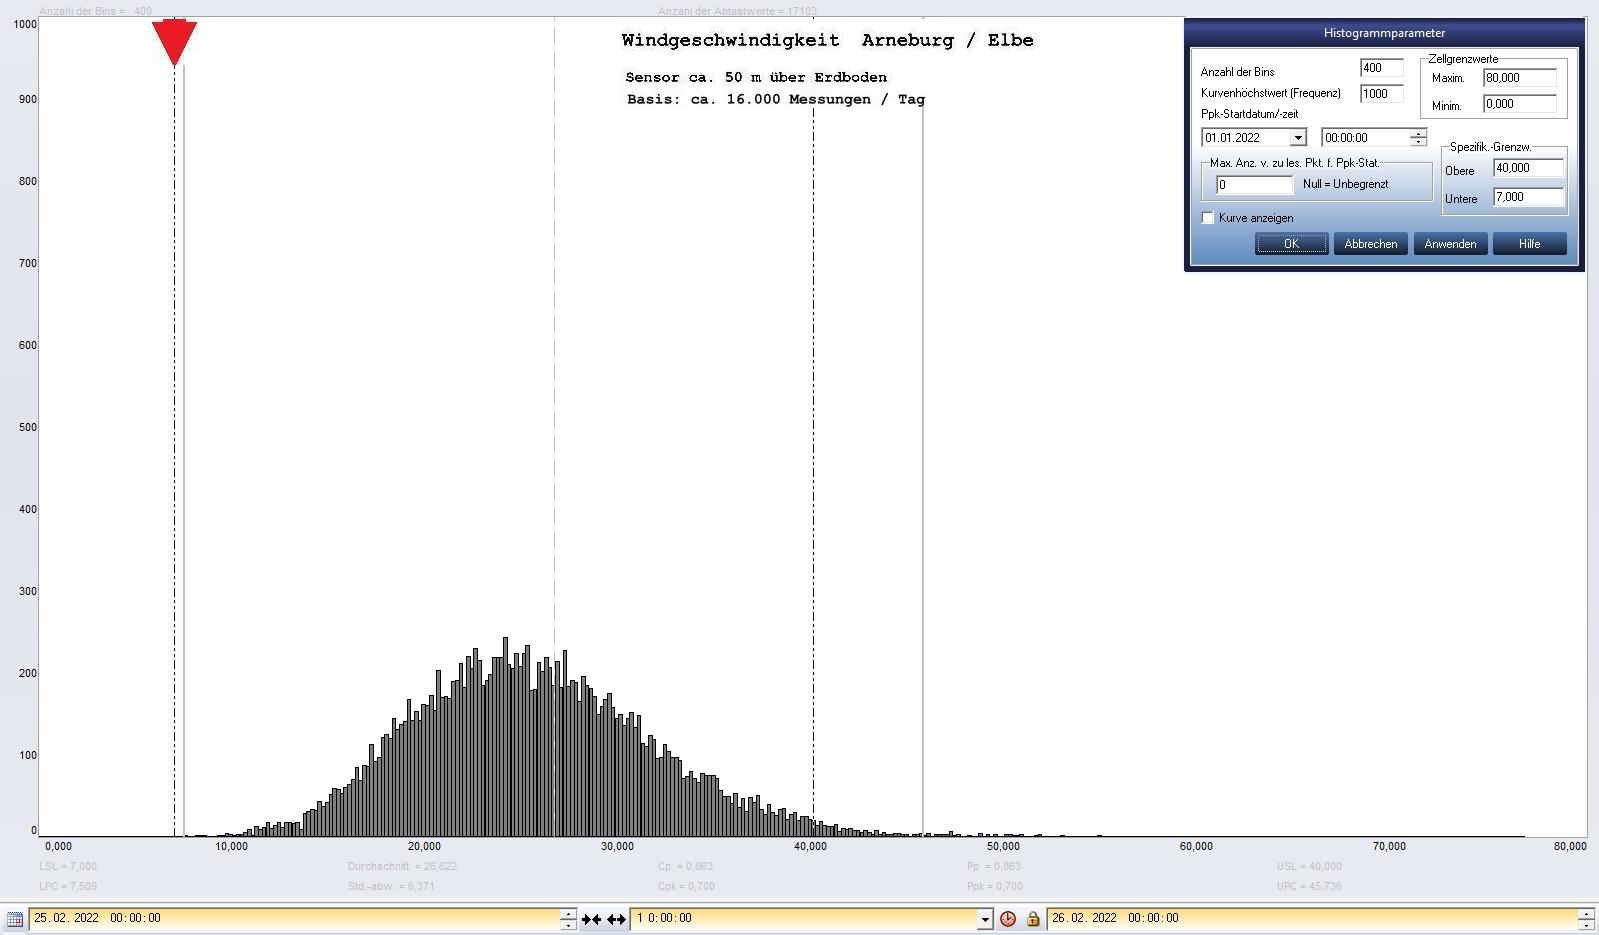 Arneburg Tages-Histogramm Winddaten, 25.02.2022
  Histogramm, Sensor auf Gebude, ca. 50 m ber Erdboden, Basis: 5s-Aufzeichnung